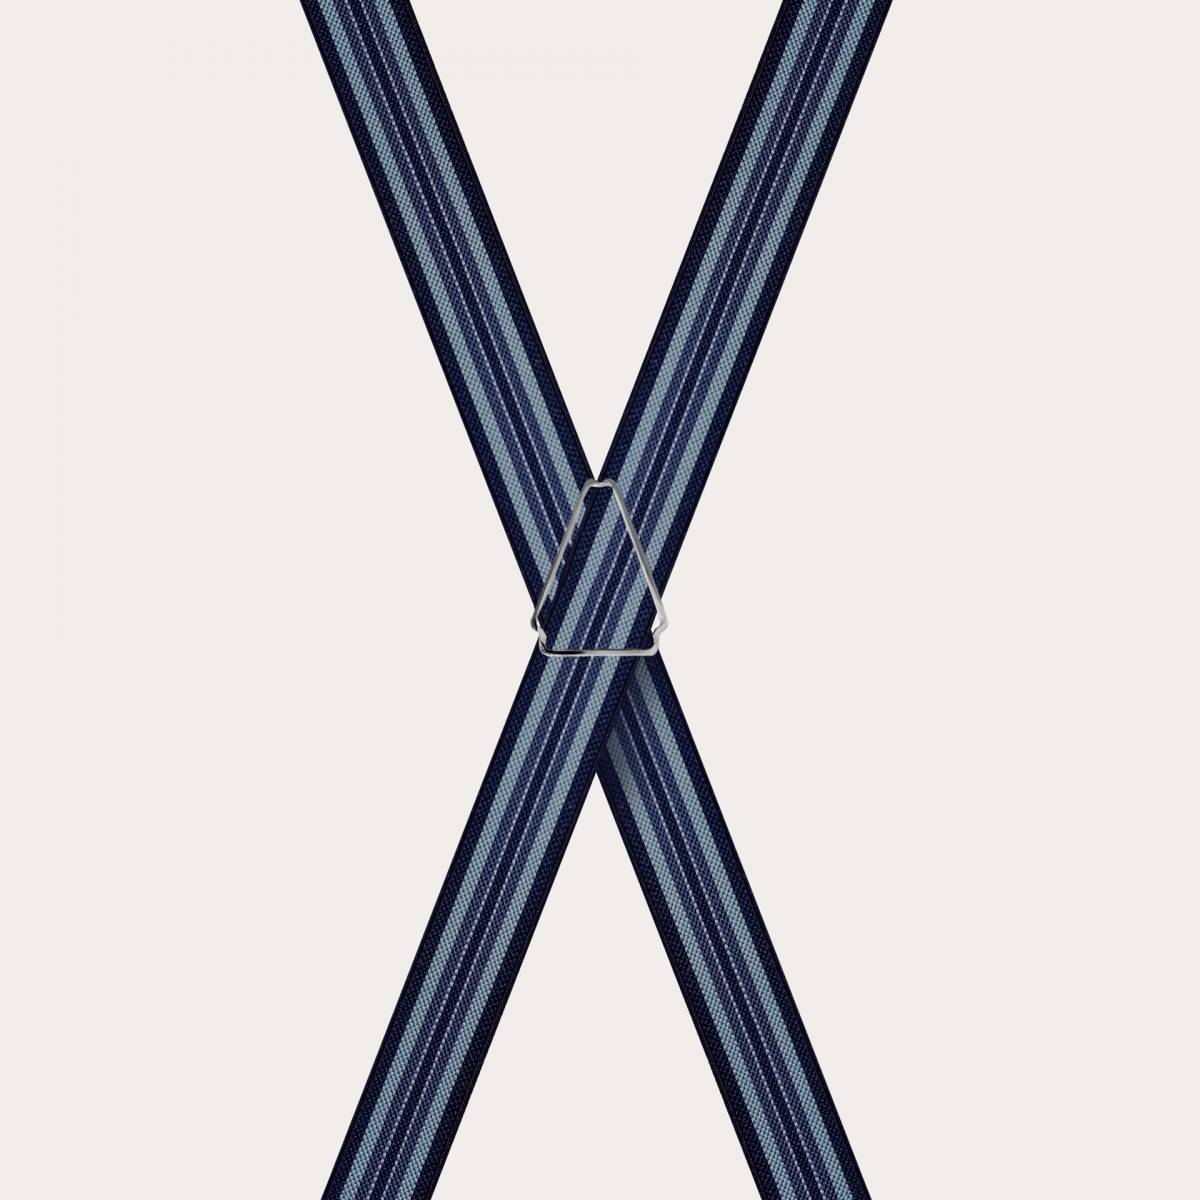 BRUCLE Dünne Hosenträger in X-Form für Kinder und Jugendliche, blau und hellblau